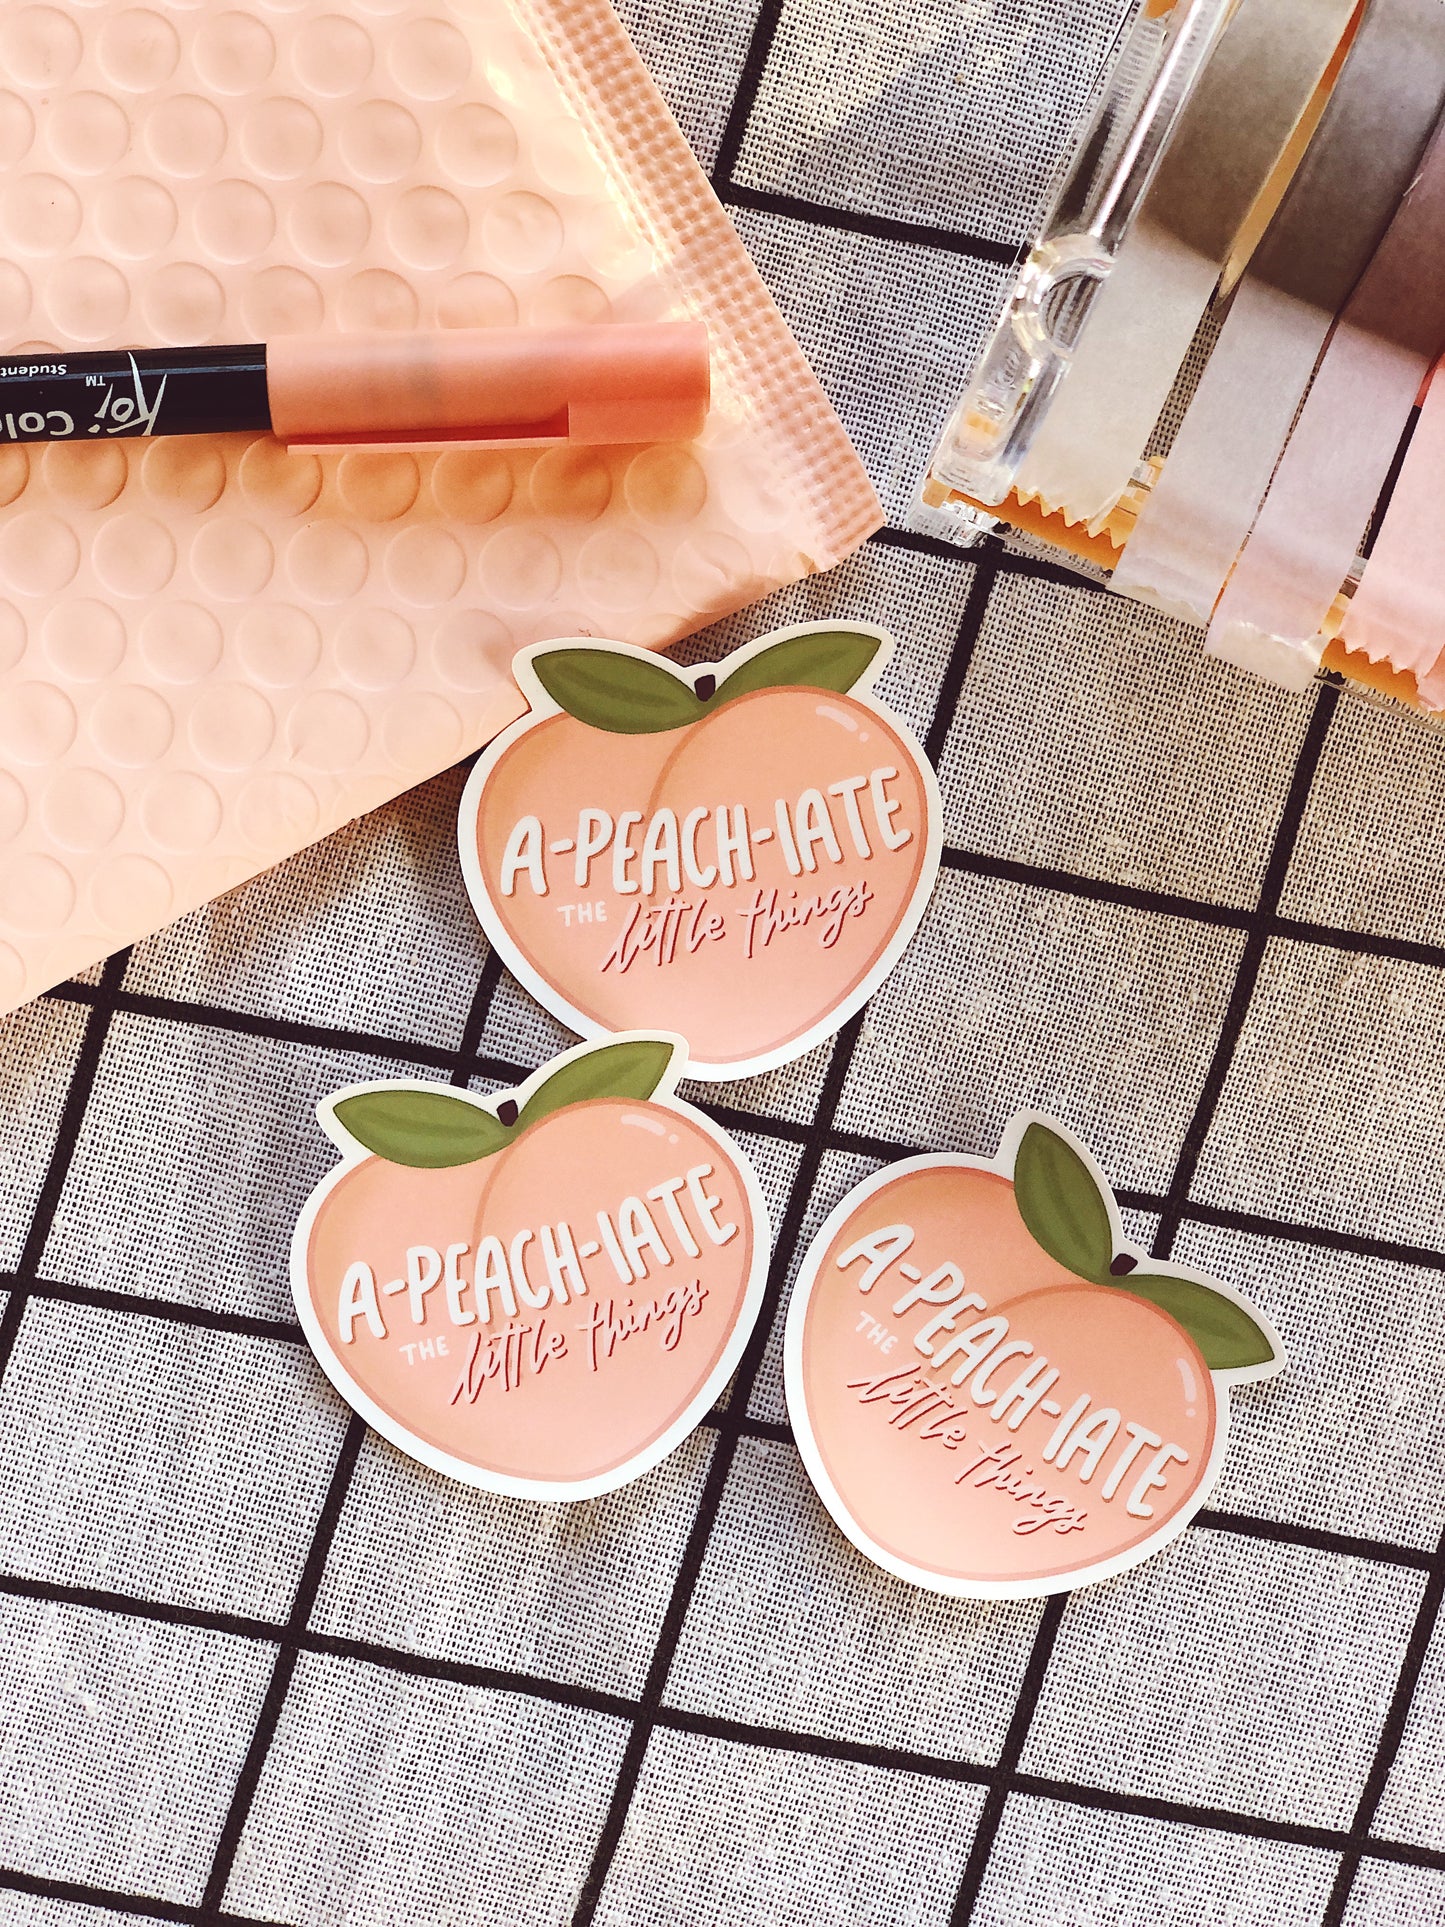 A-peach-iate Things Sticker